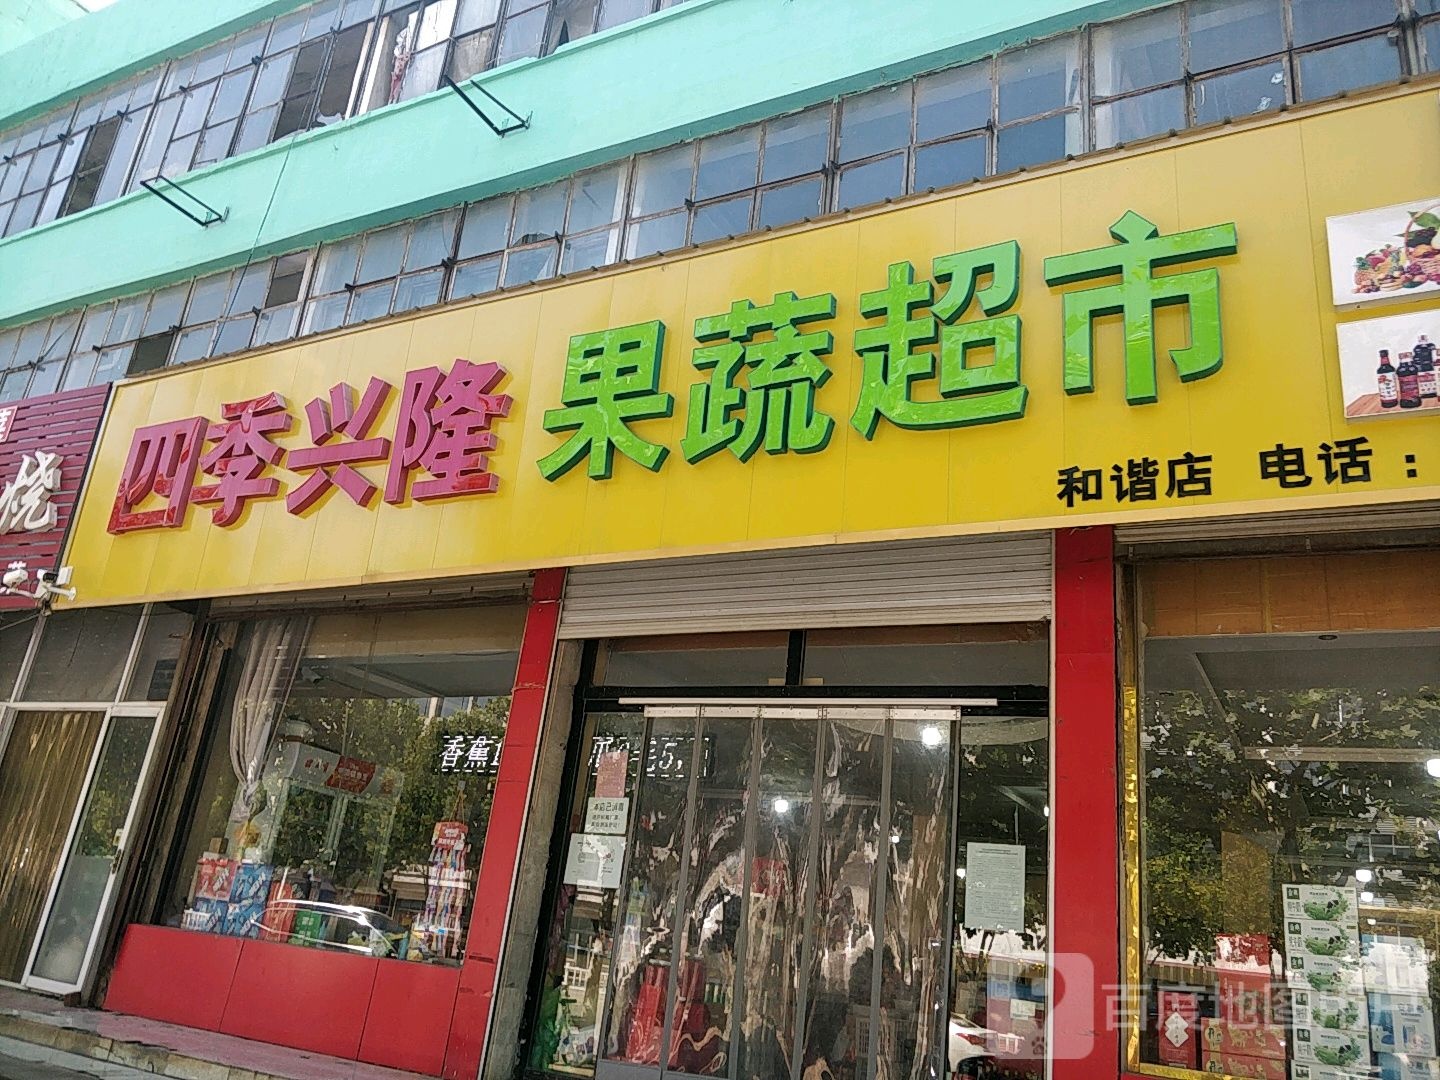 四季兴隆果蔬超市(和谐店)